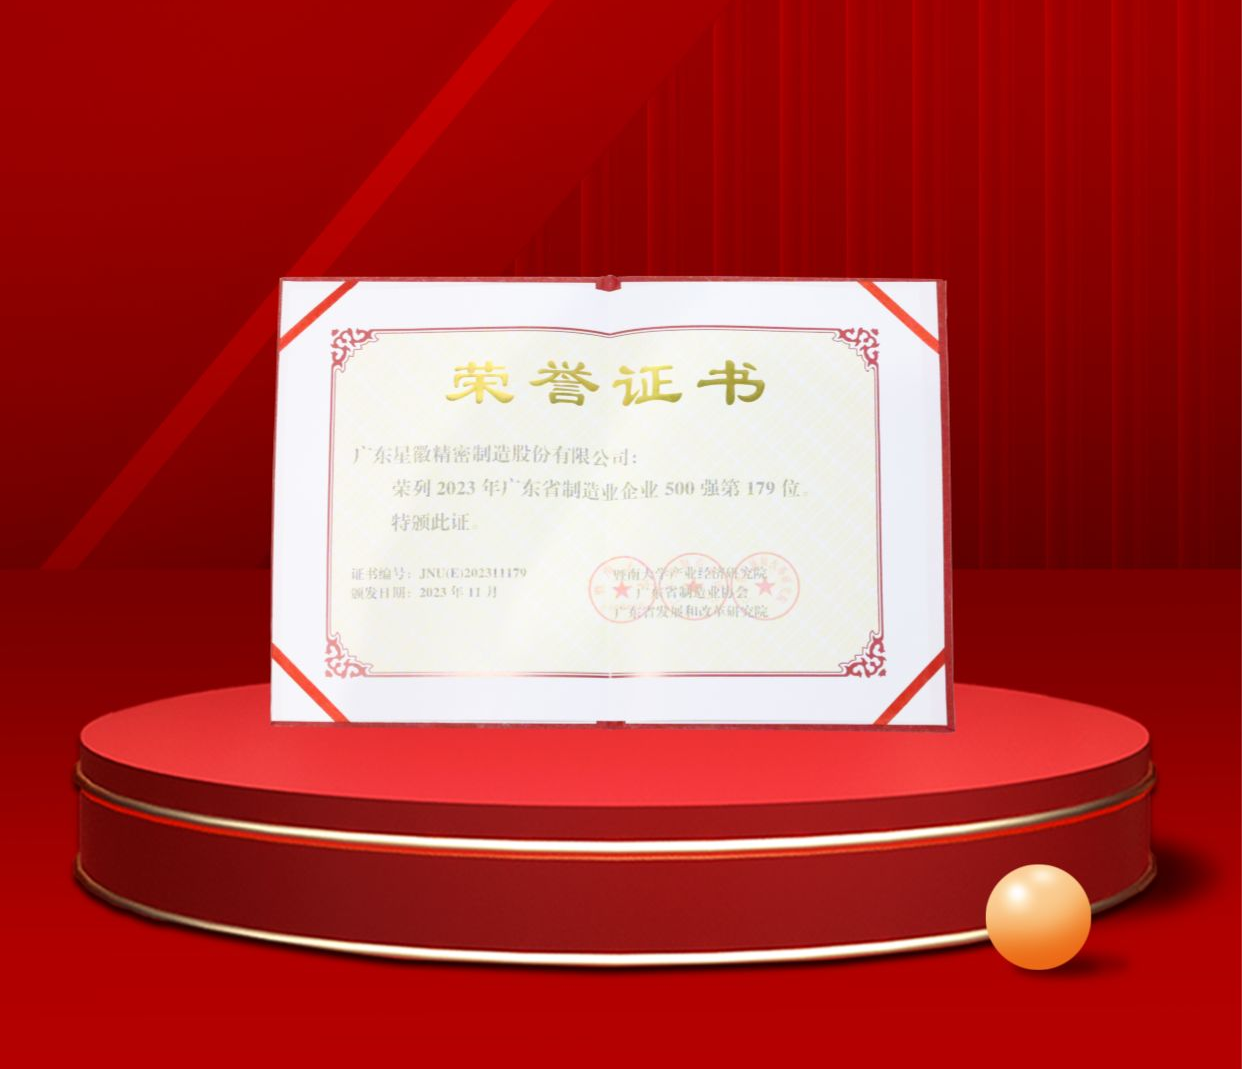 澳门新莆京游戏app1155荣列2023年广东省制造业企业500强第179位